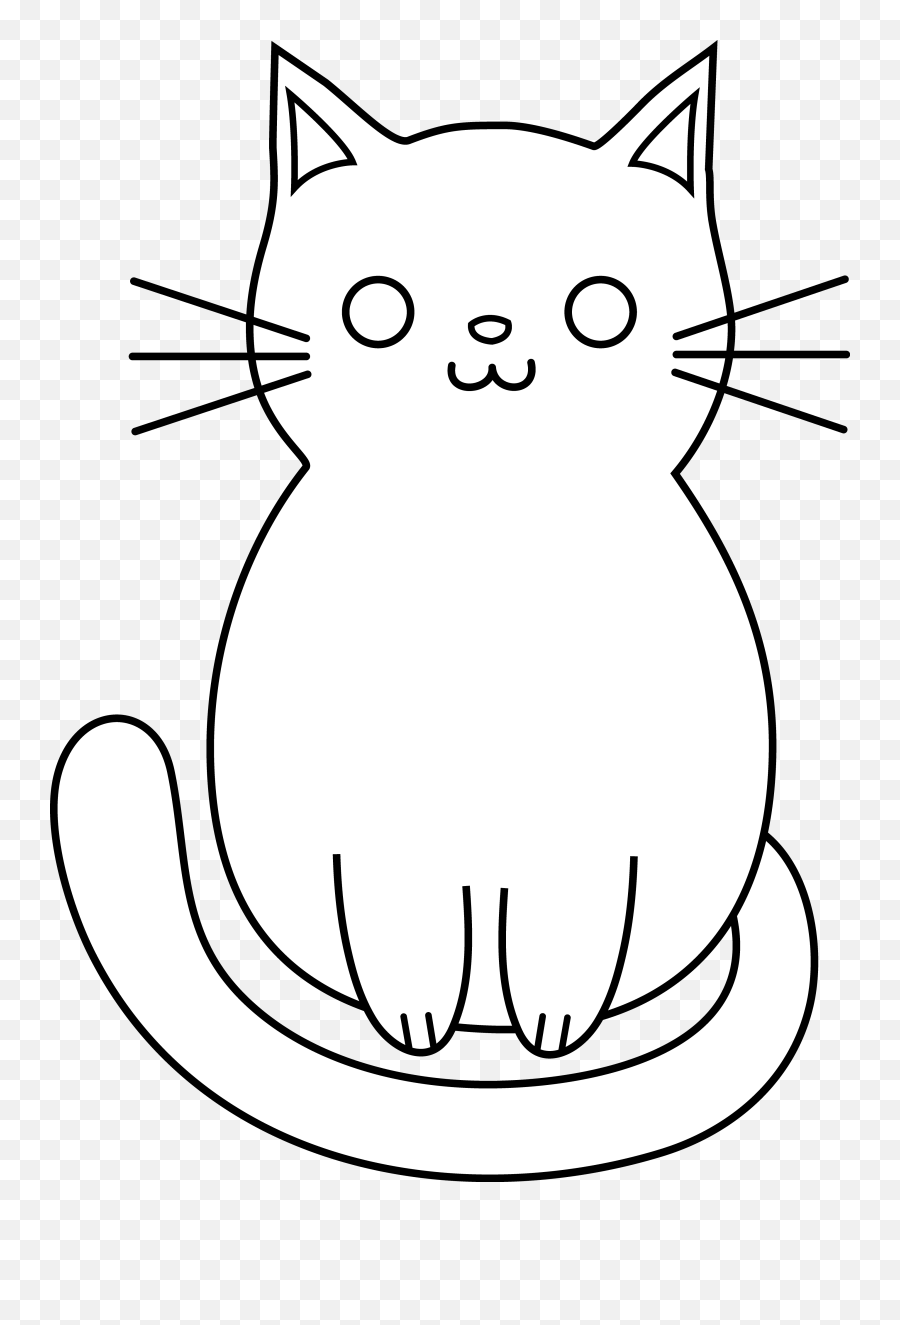 Cute Cat Clipart Free Images 2 - Clipartix Easy Cat Line Drawing Emoji,Cute Cat Emoji